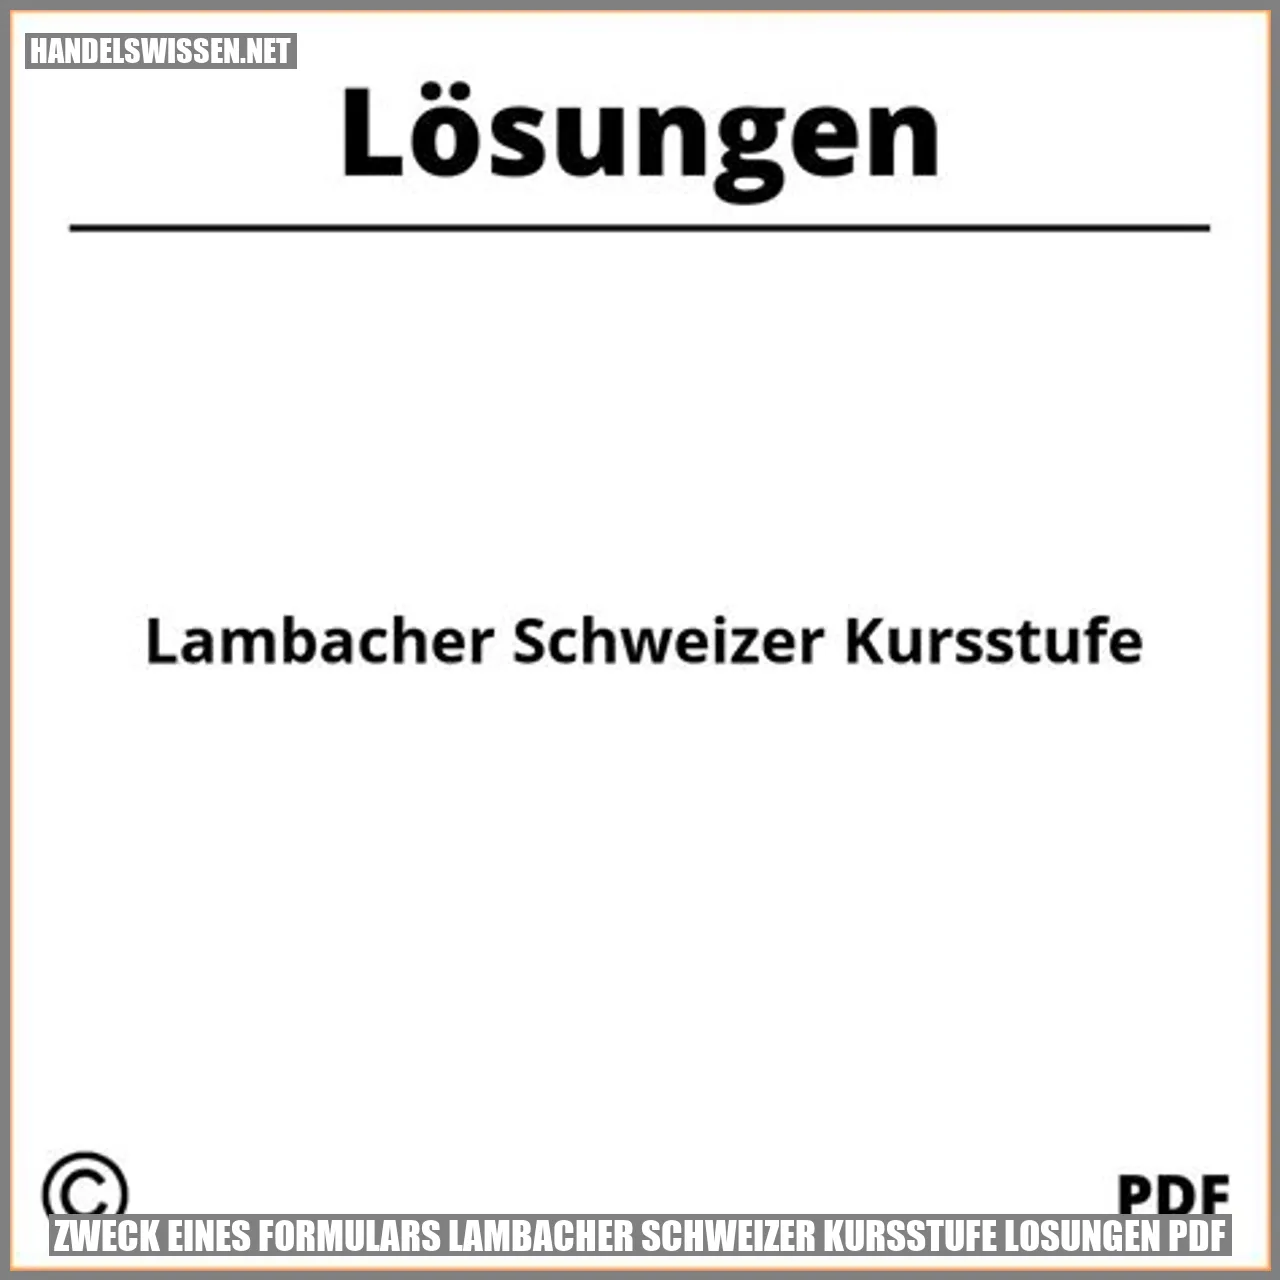 Zweck eines Formulars Lambacher Schweizer Kursstufe Lösungen PDF